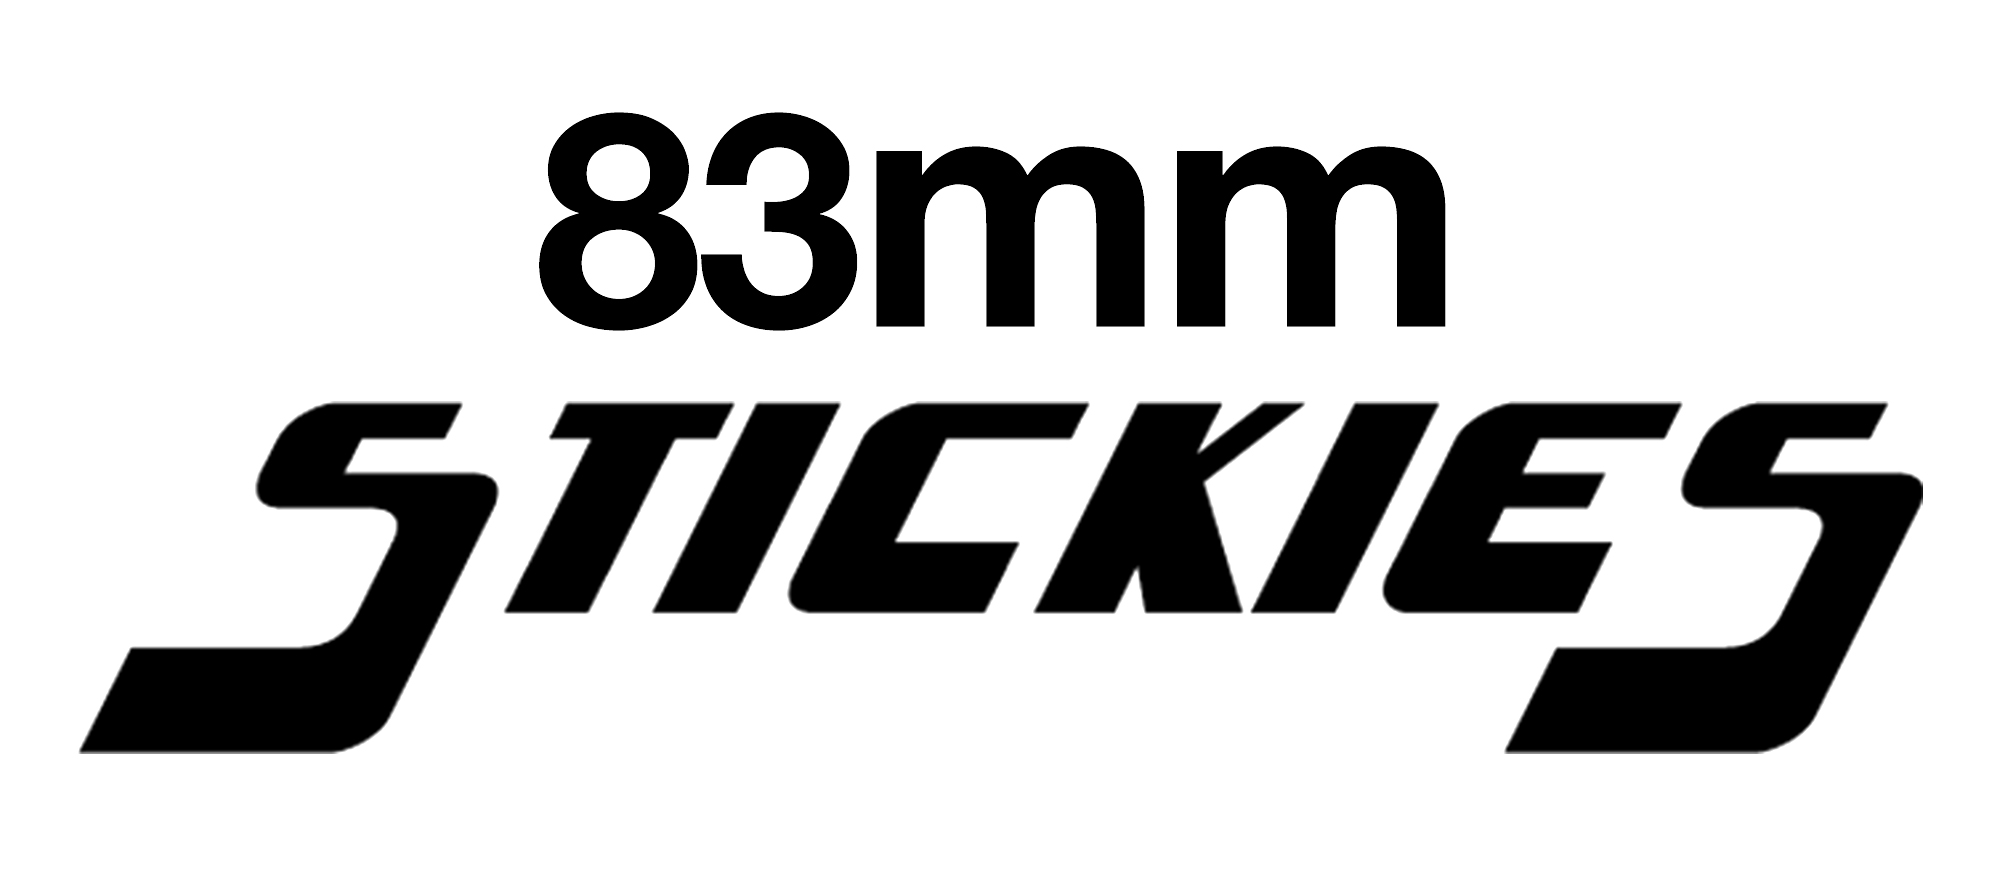 83mm STICKIES Longboard Wheels 